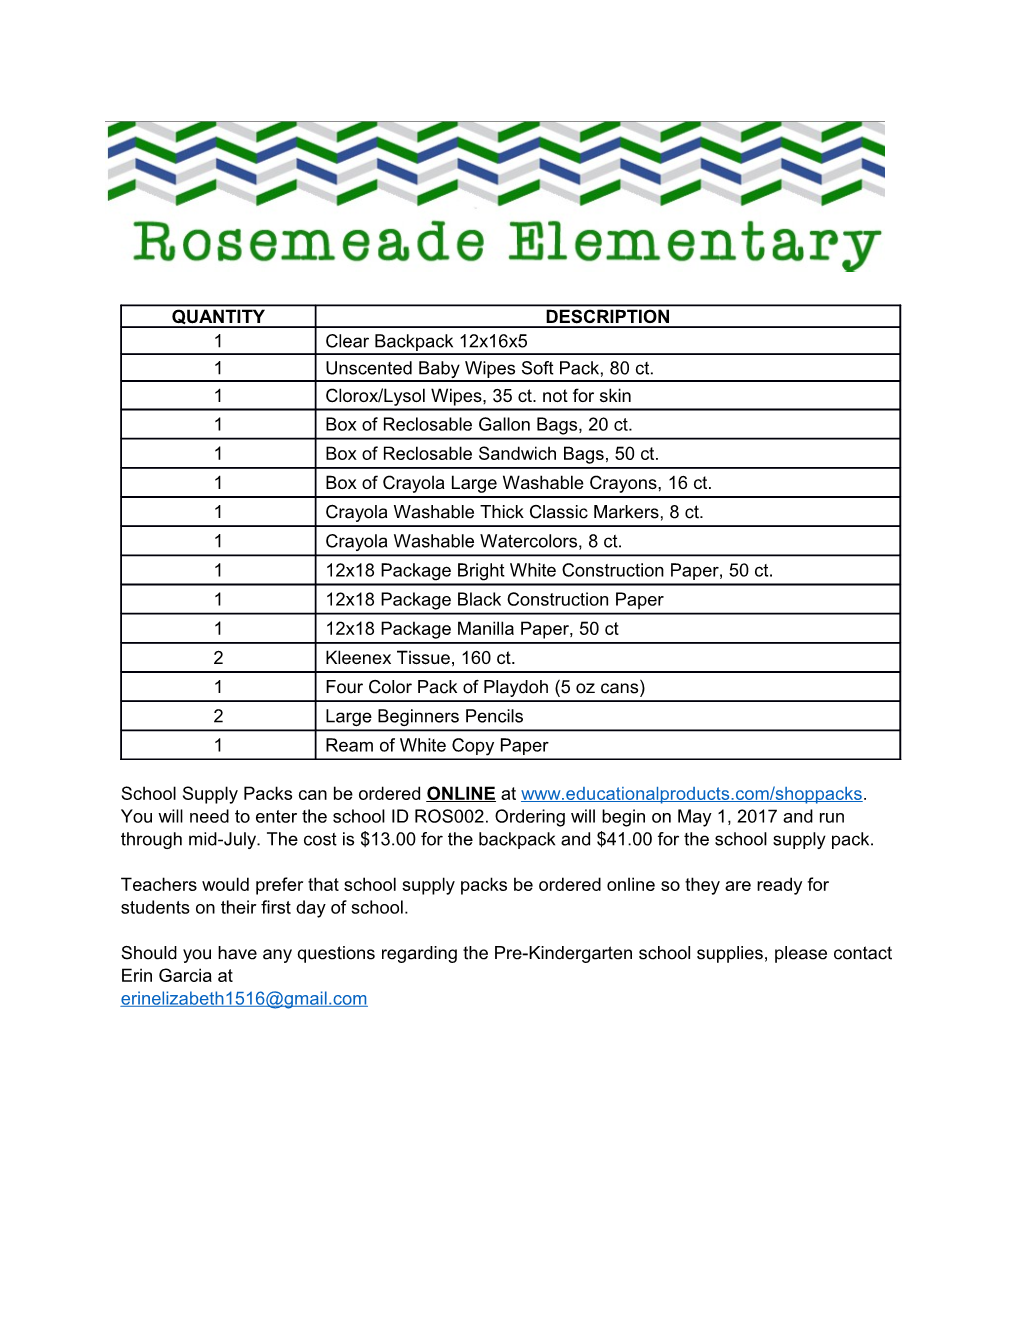 Pre-Kindergarten School Supply List